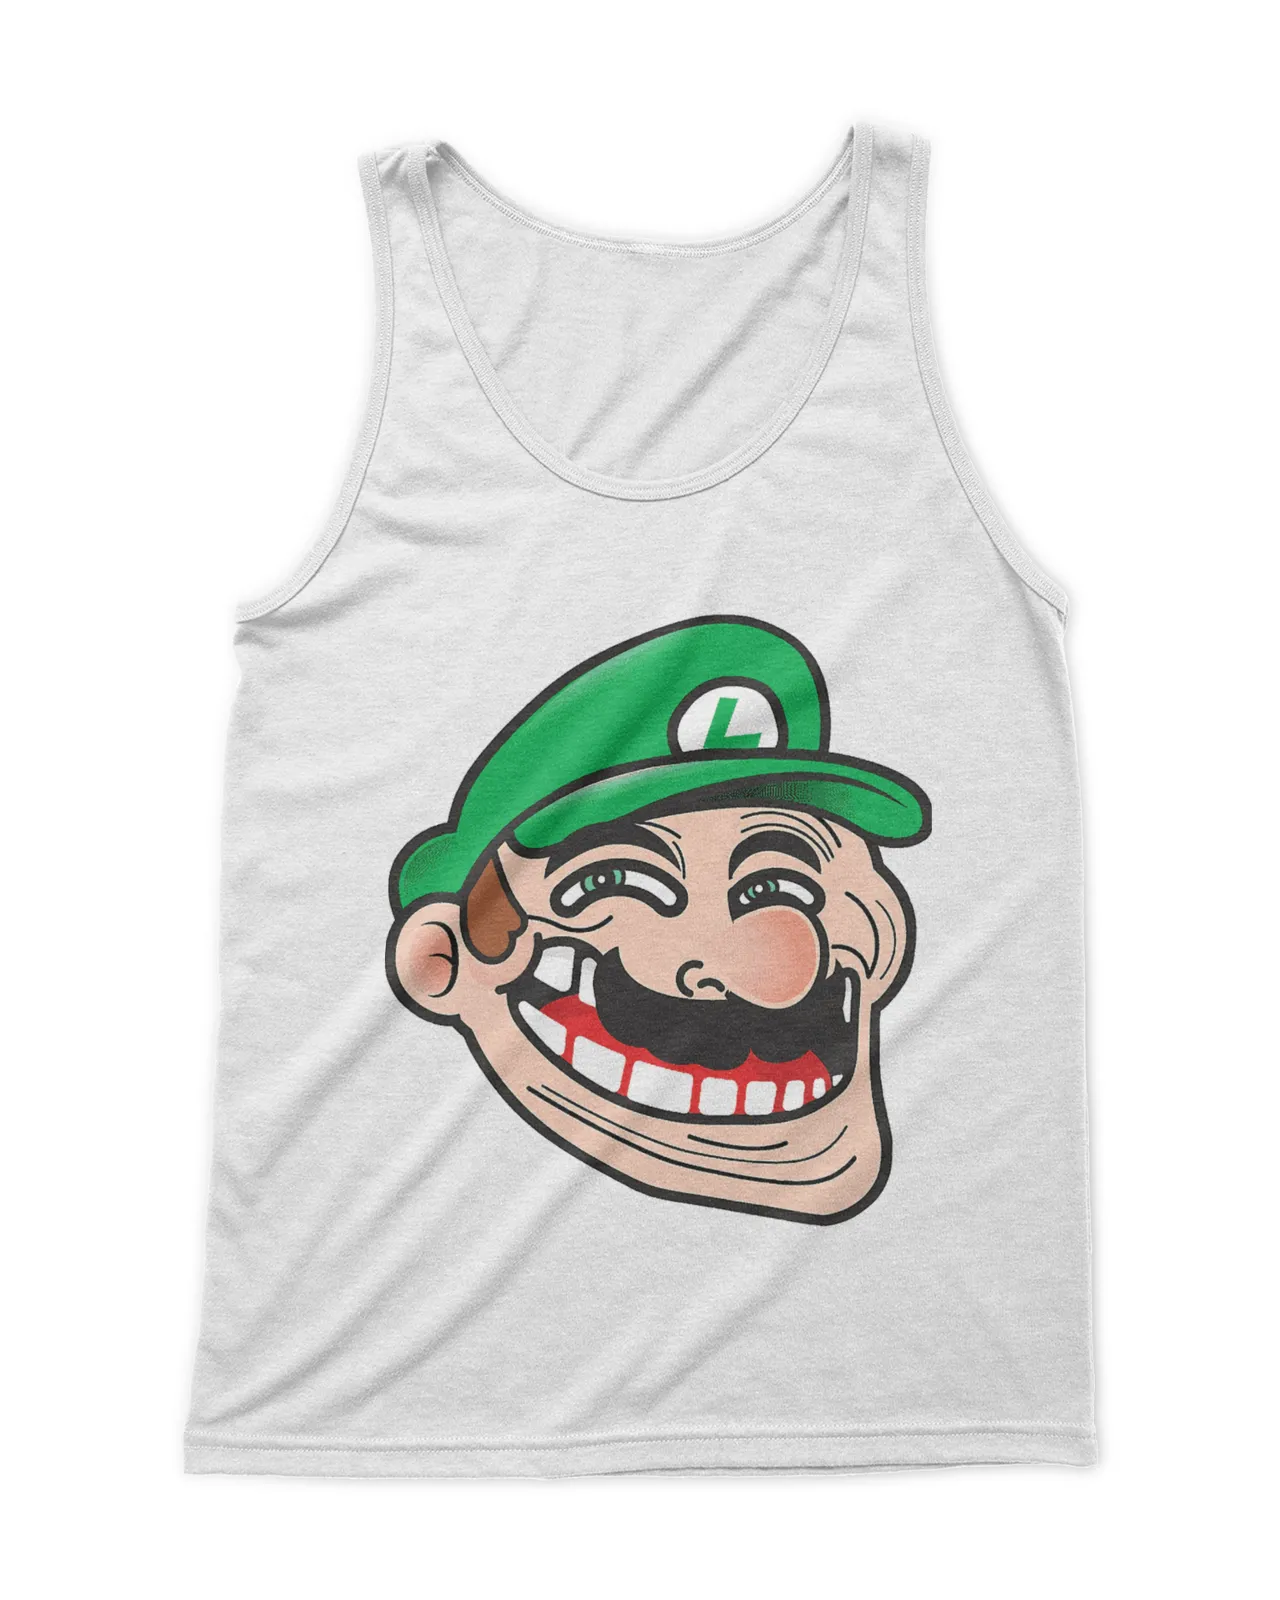 Luigi Mario Bros Troll Face Shirt